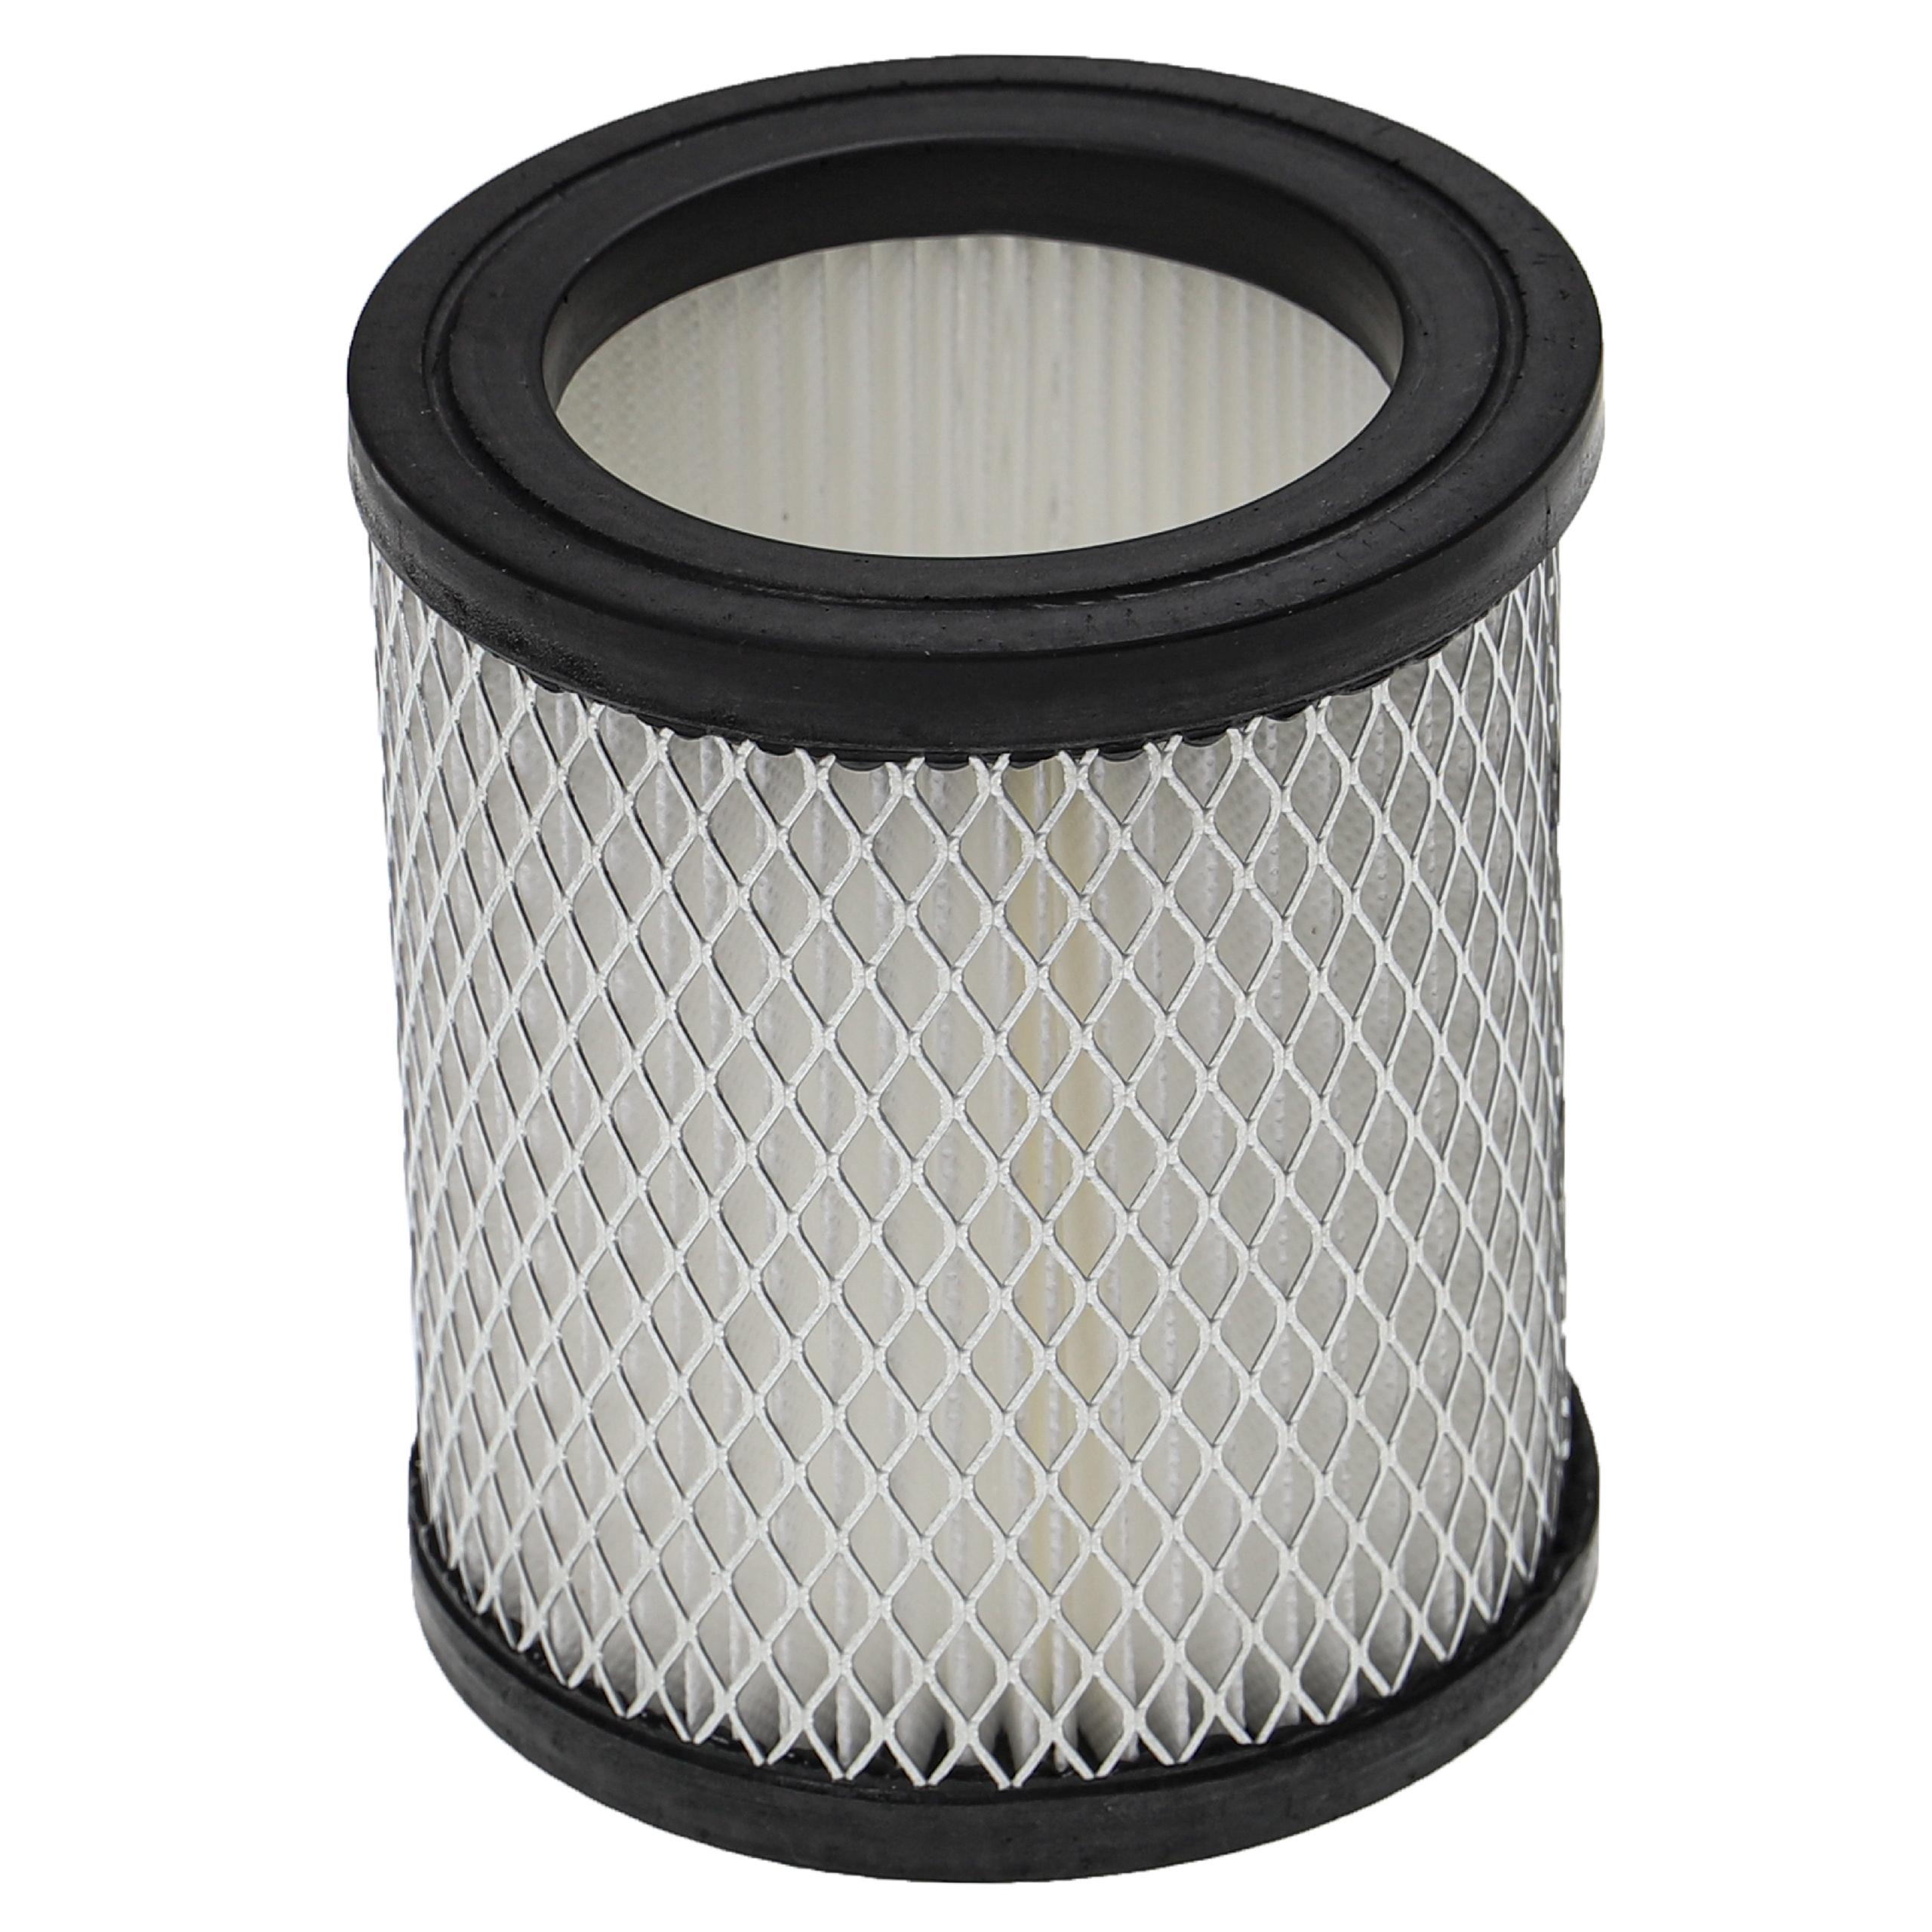 Filtre remplace Ruecab 003451 pour aspirateur de cheminée - filtre HEPA